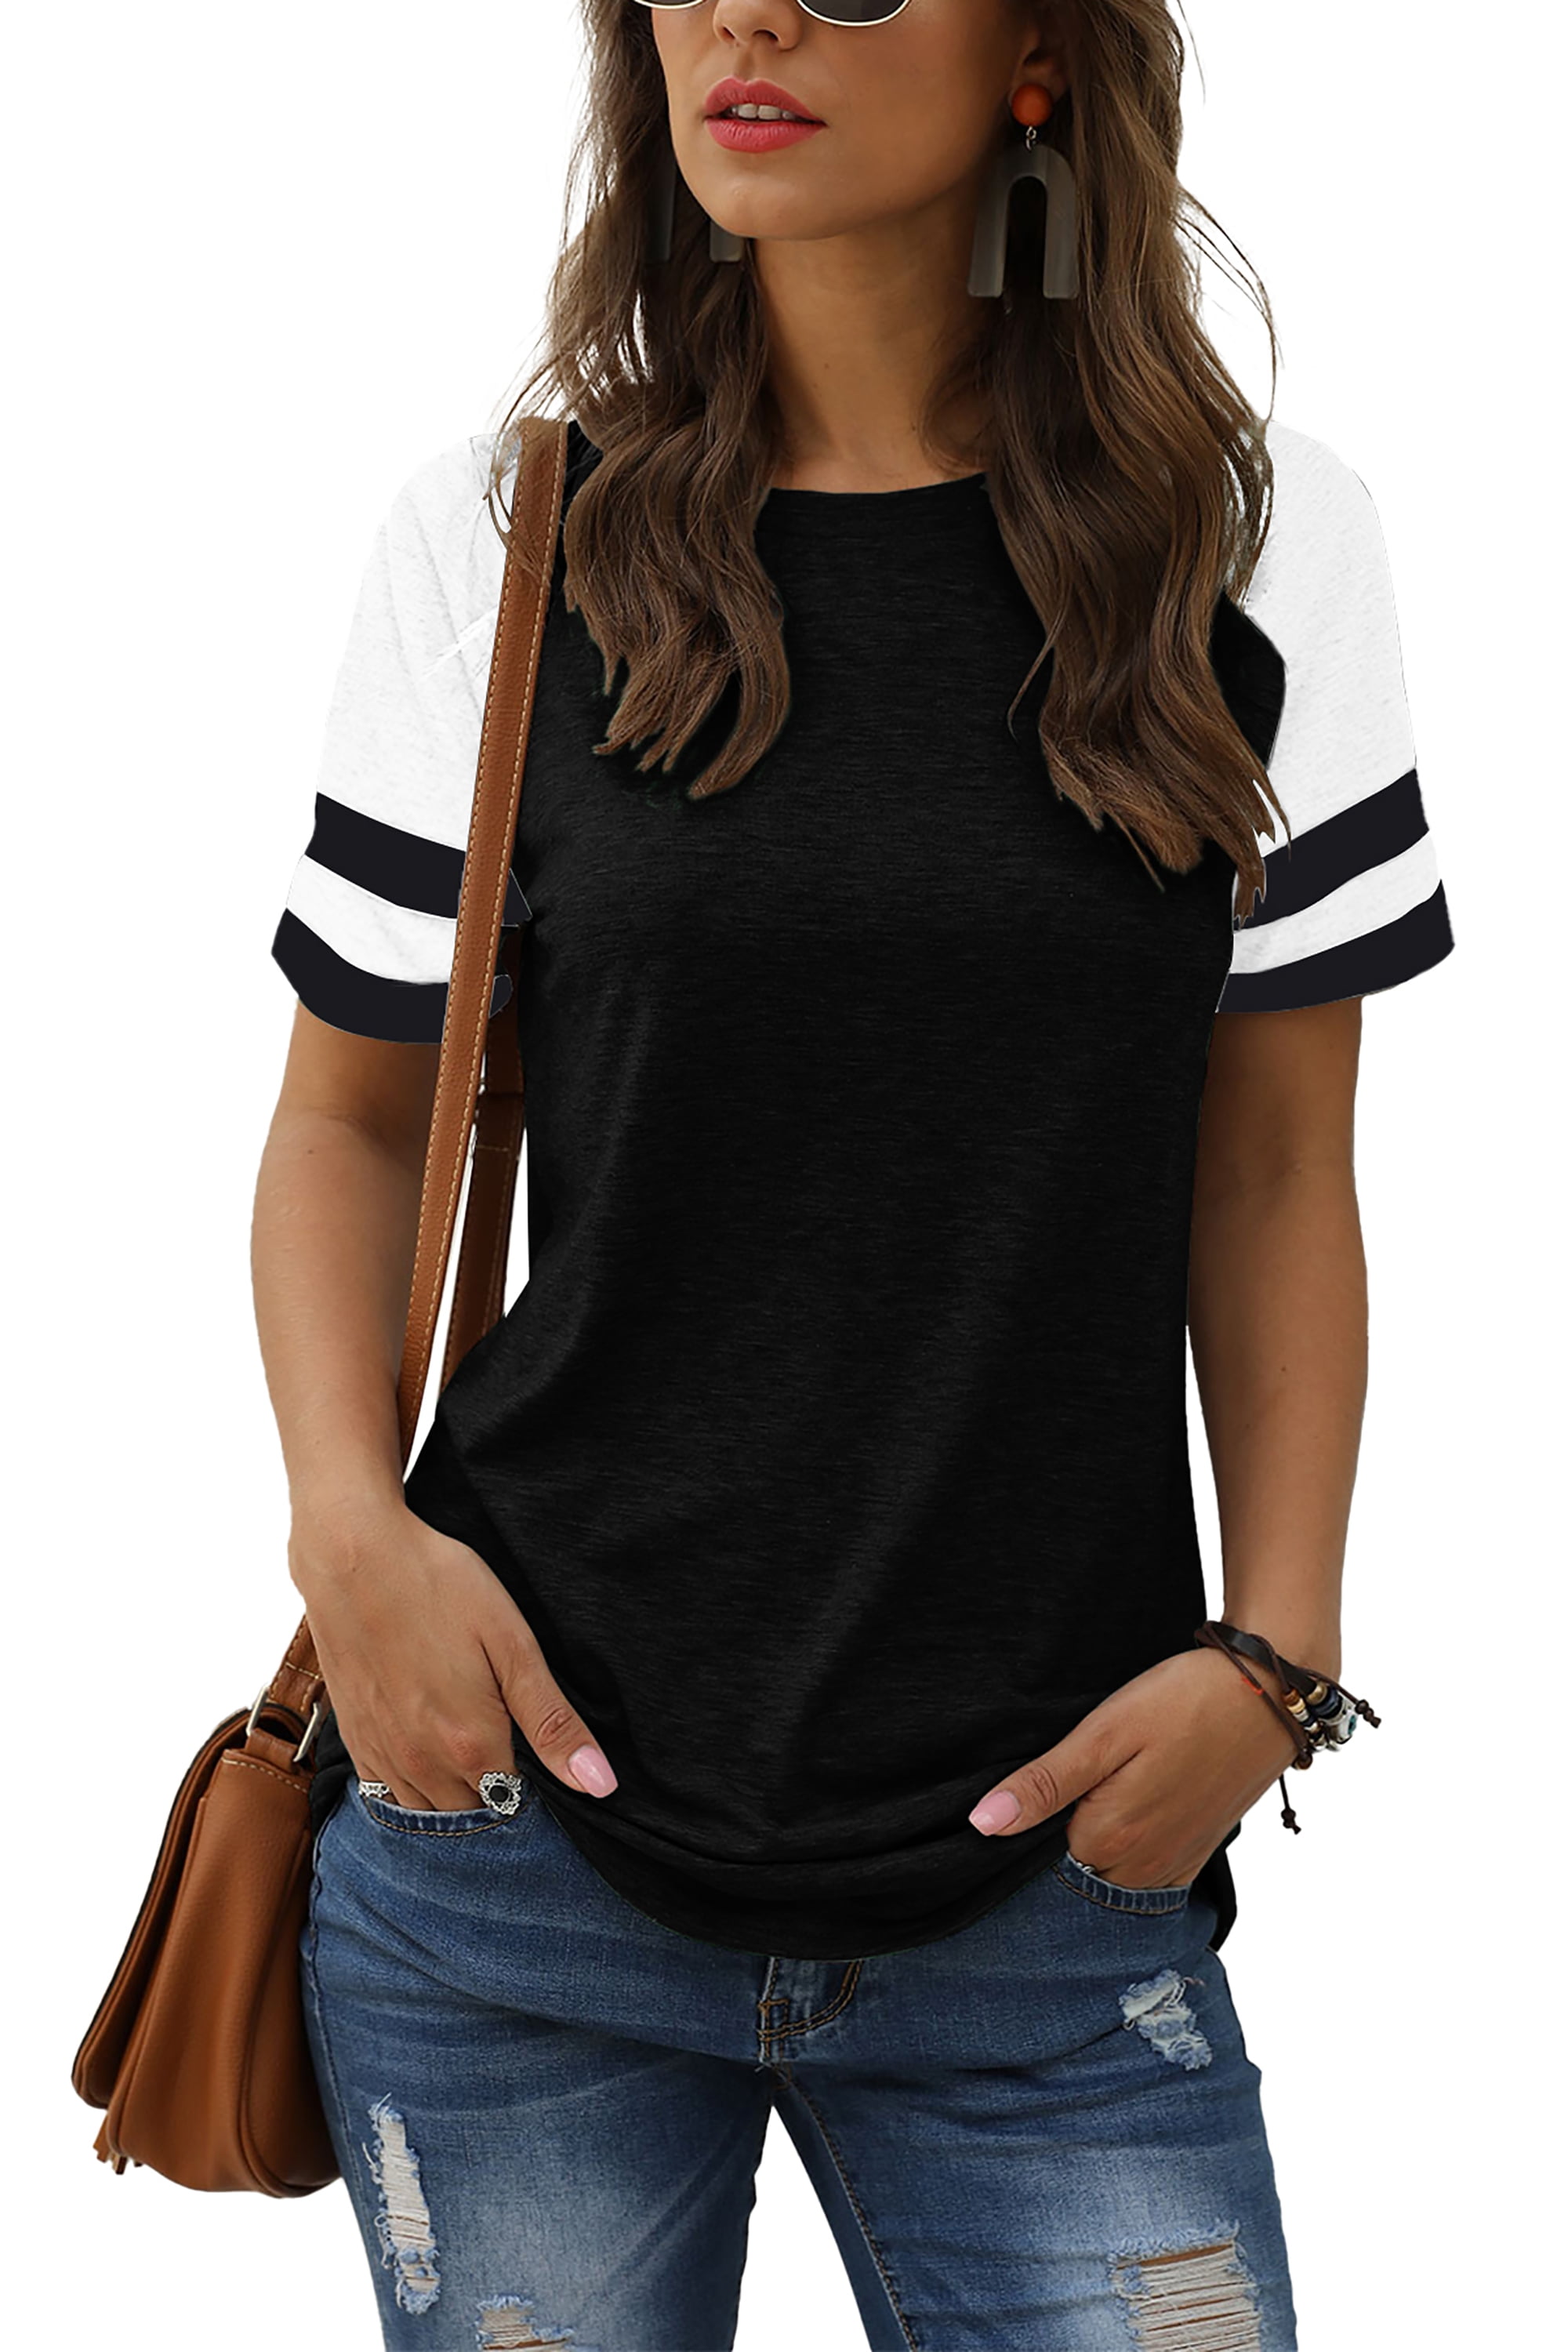 TEMOFON Womens Fashion Summer T-shirt Color Block Shirts for Women ...